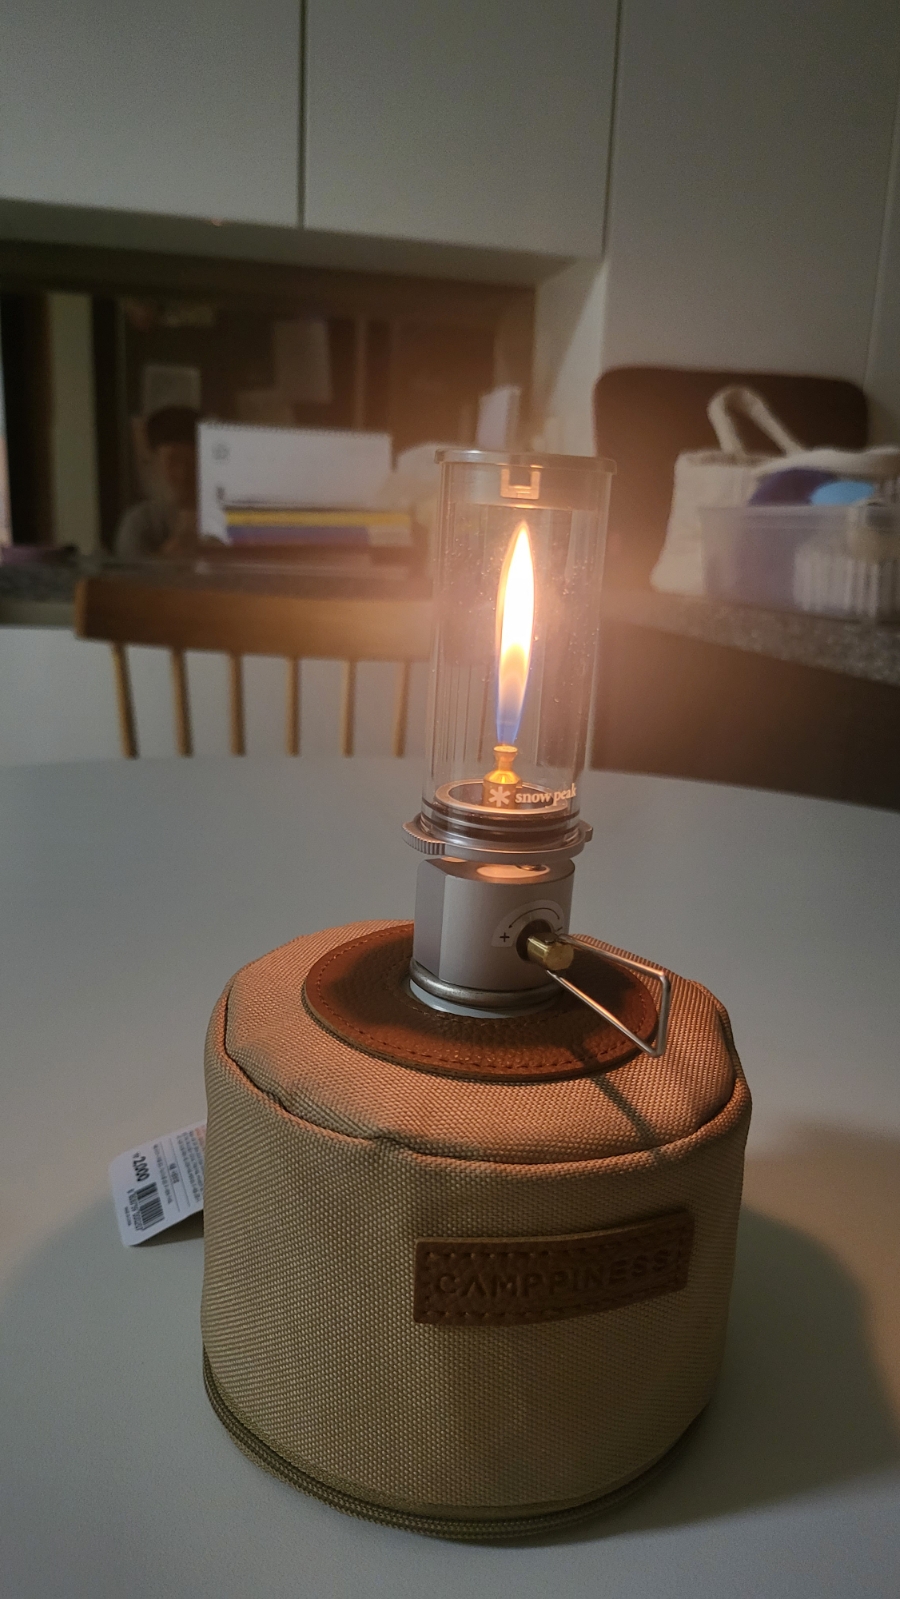 스노우피크 녹턴 램프+다이소 이소가스, 케이스 구입 사용기